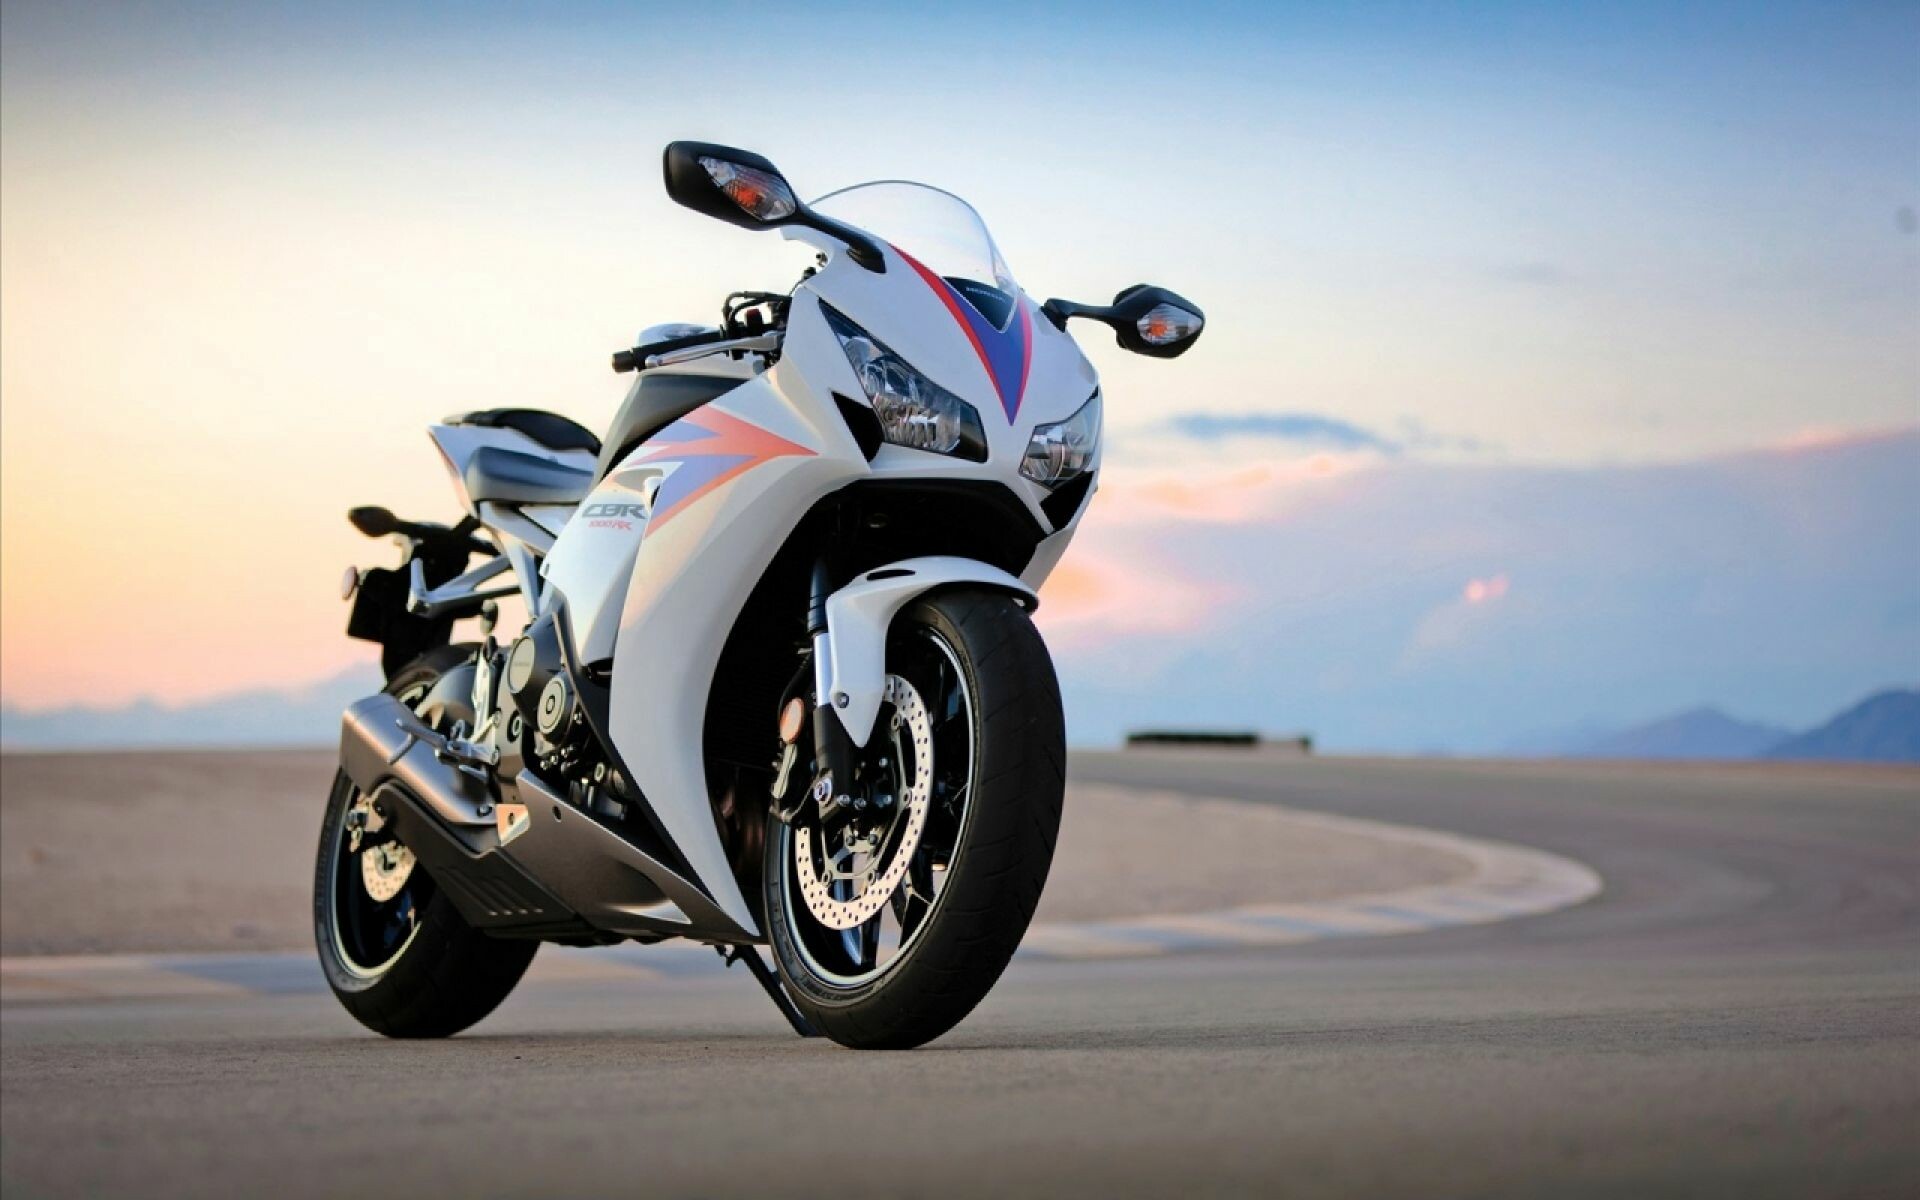 Bike: Honda CBR1000RR, A 999 cc (61.0 cu in) liquid-cooled inline four-cylinder superbike. 1920x1200 HD Background.